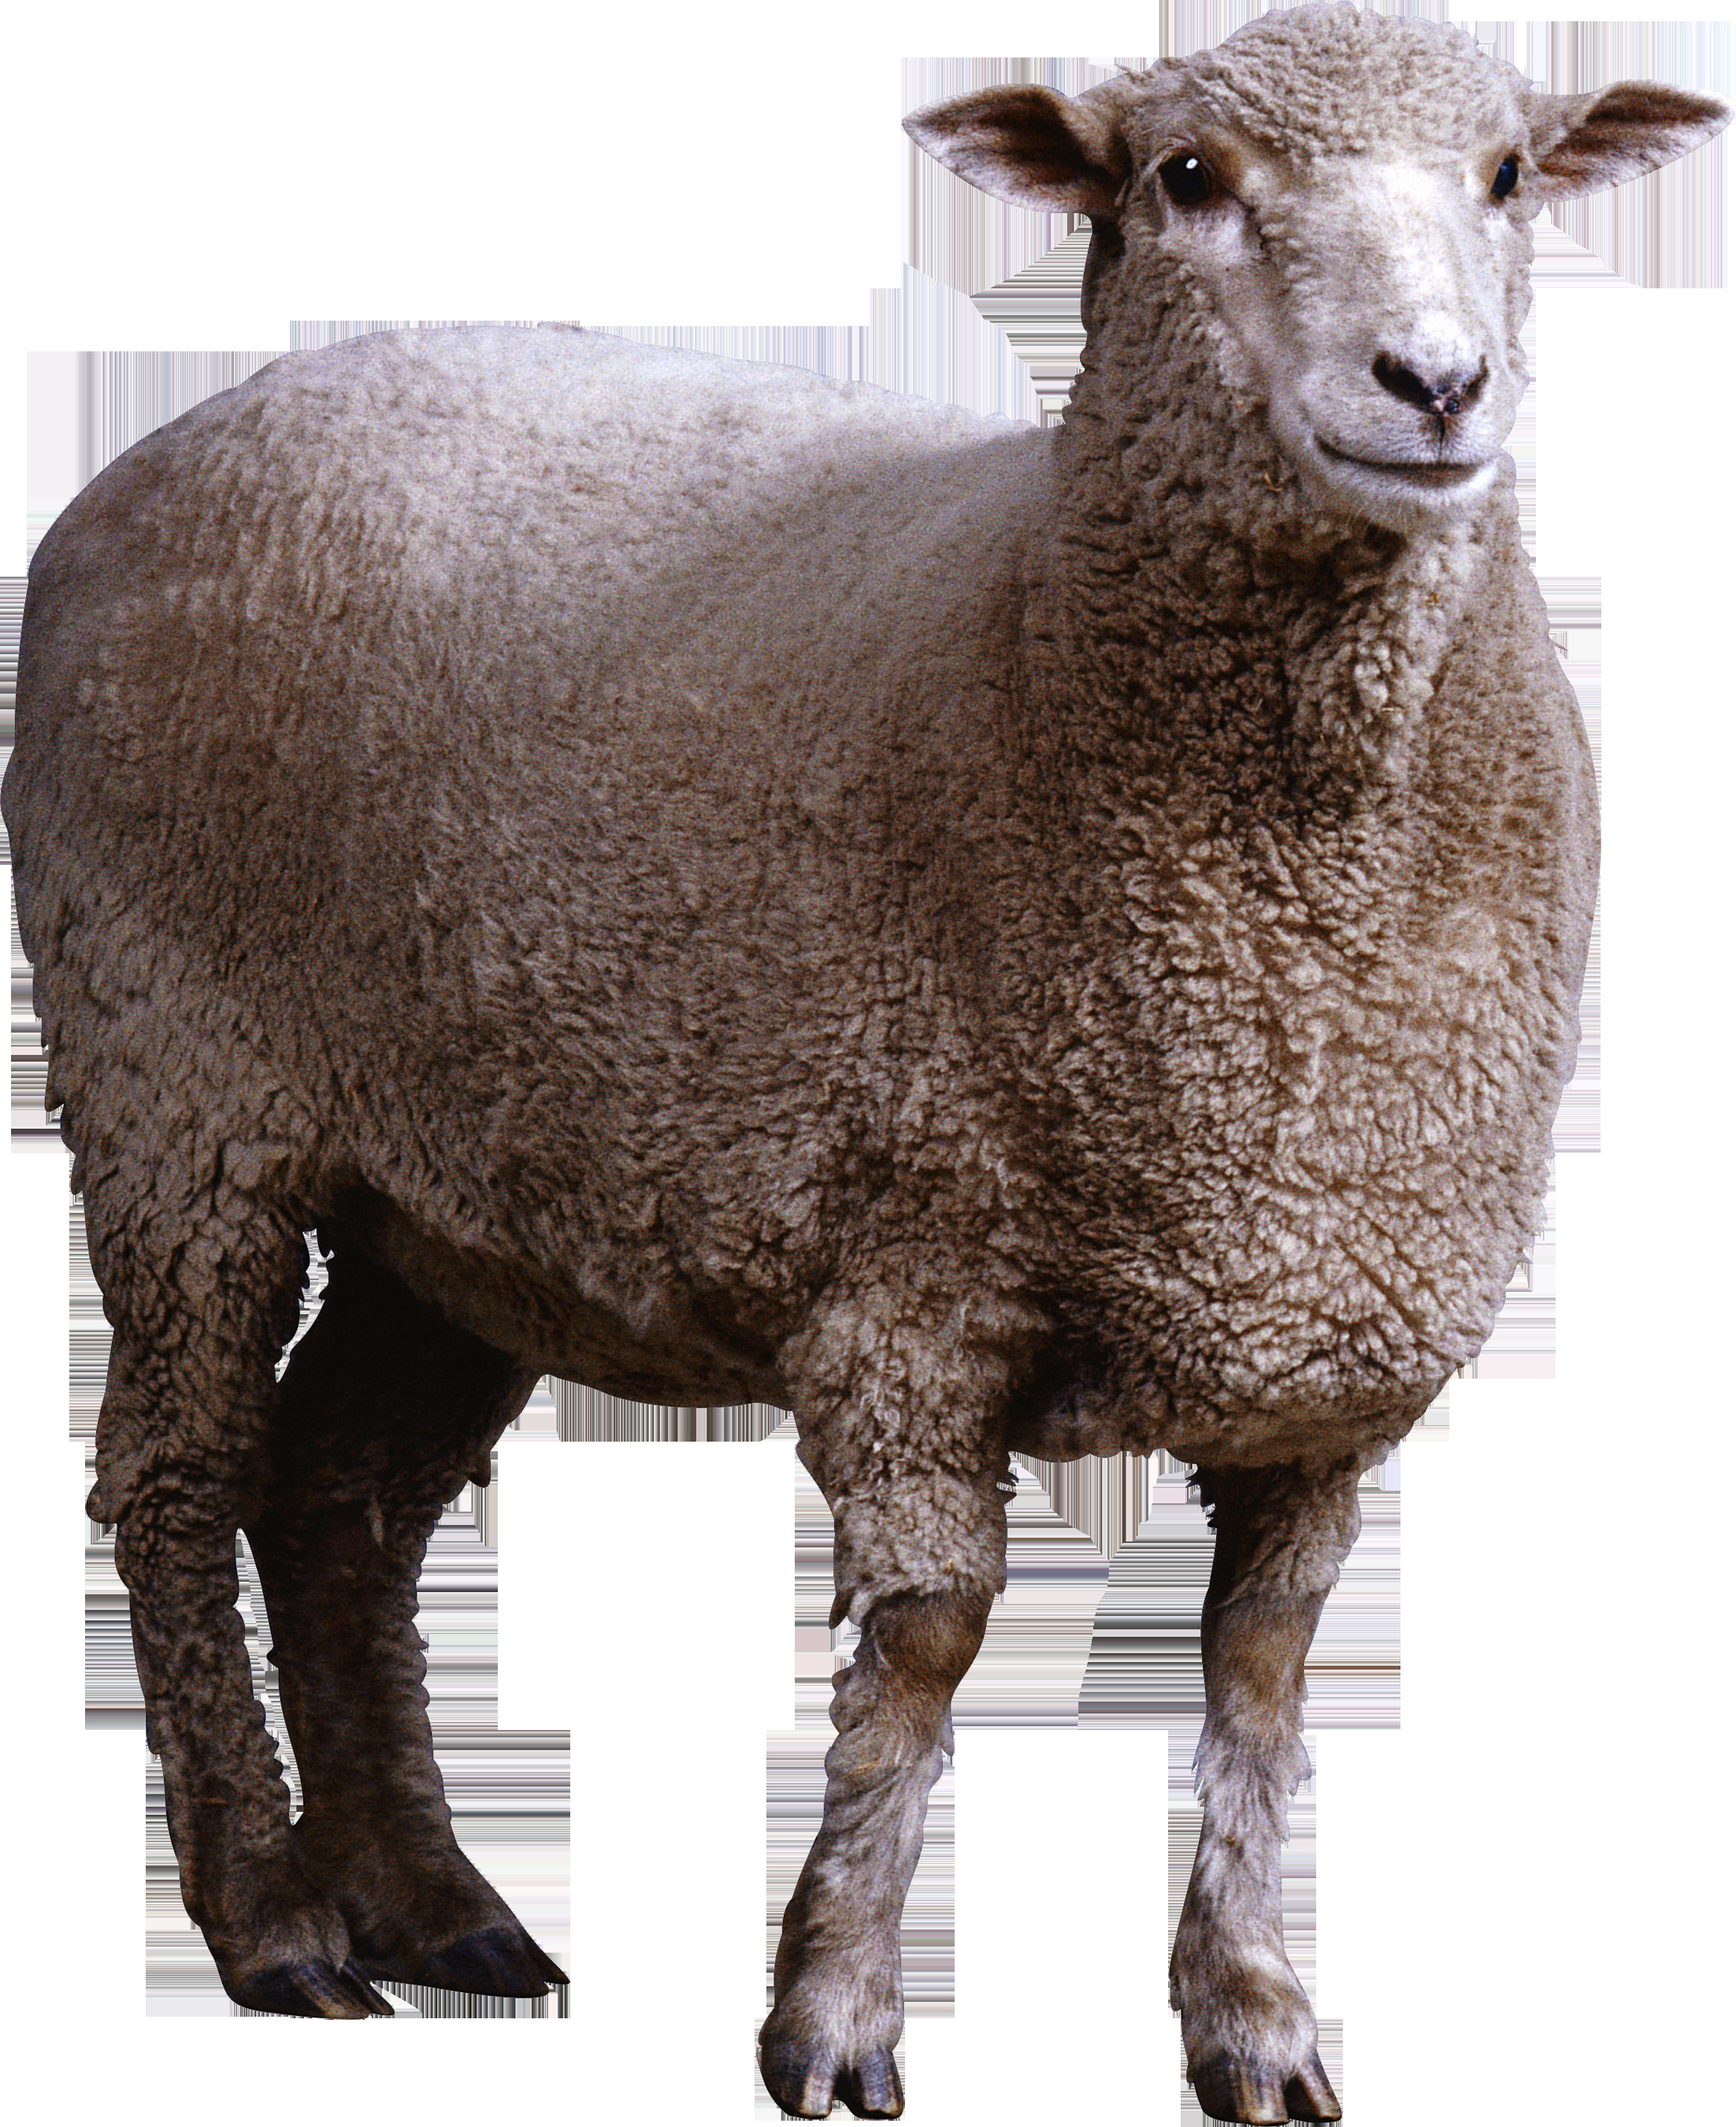 Farm Animal Cut Outs Best Of Sheep Mouton Cutout Freigestellt Pinterest